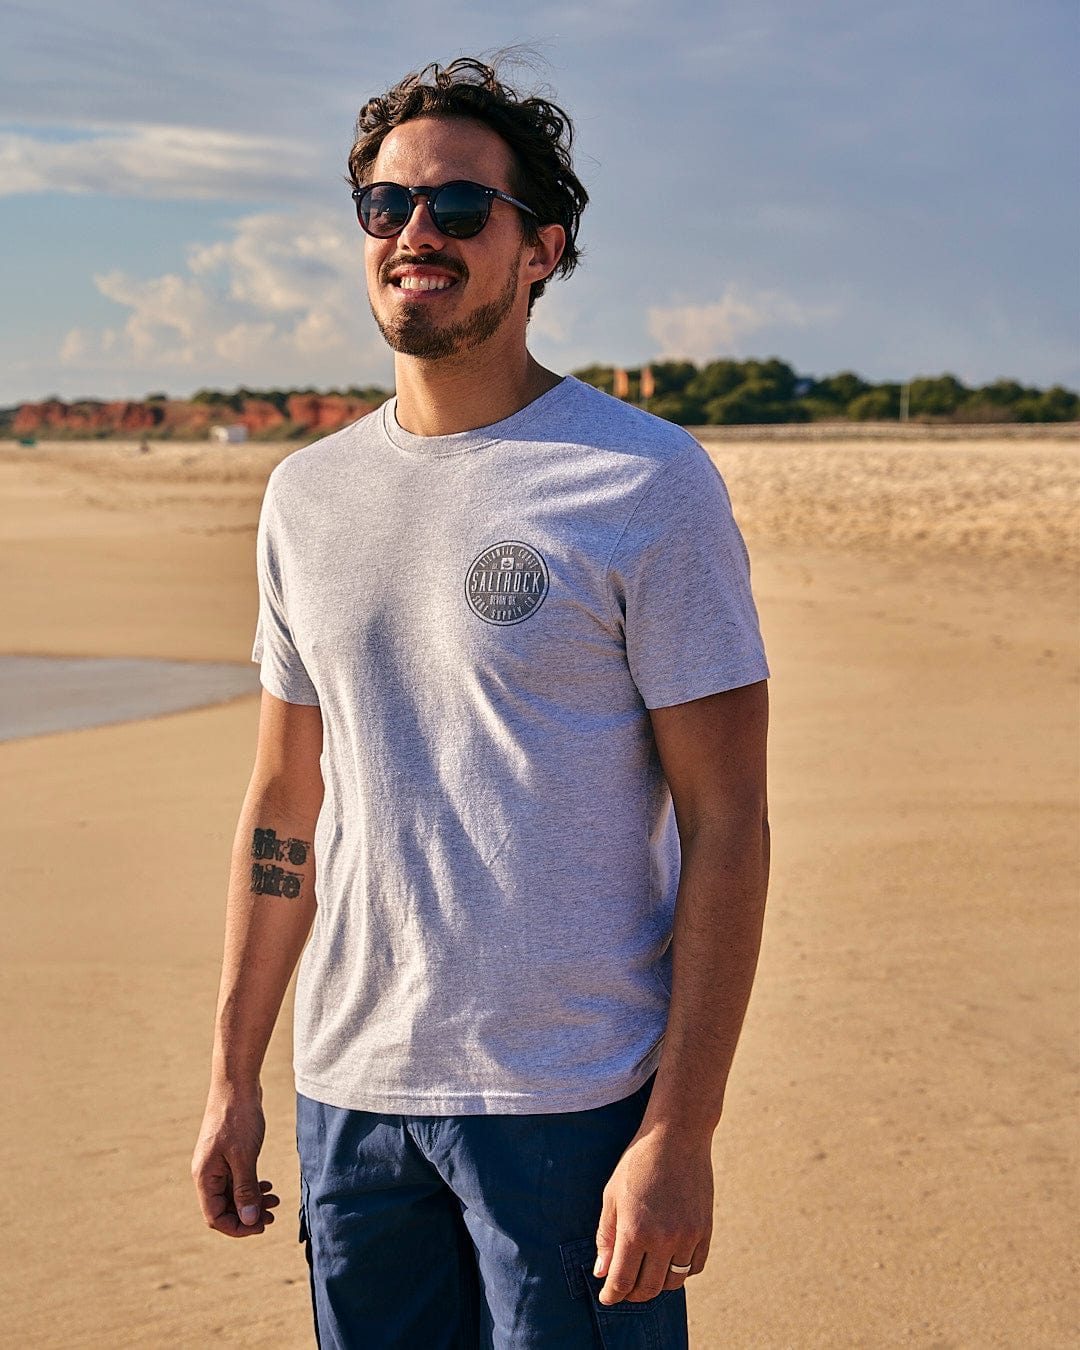 A man standing on a beach wearing Saltrock sunglasses and an All Terrain - Mens Short Sleeve T-Shirt - Grey.